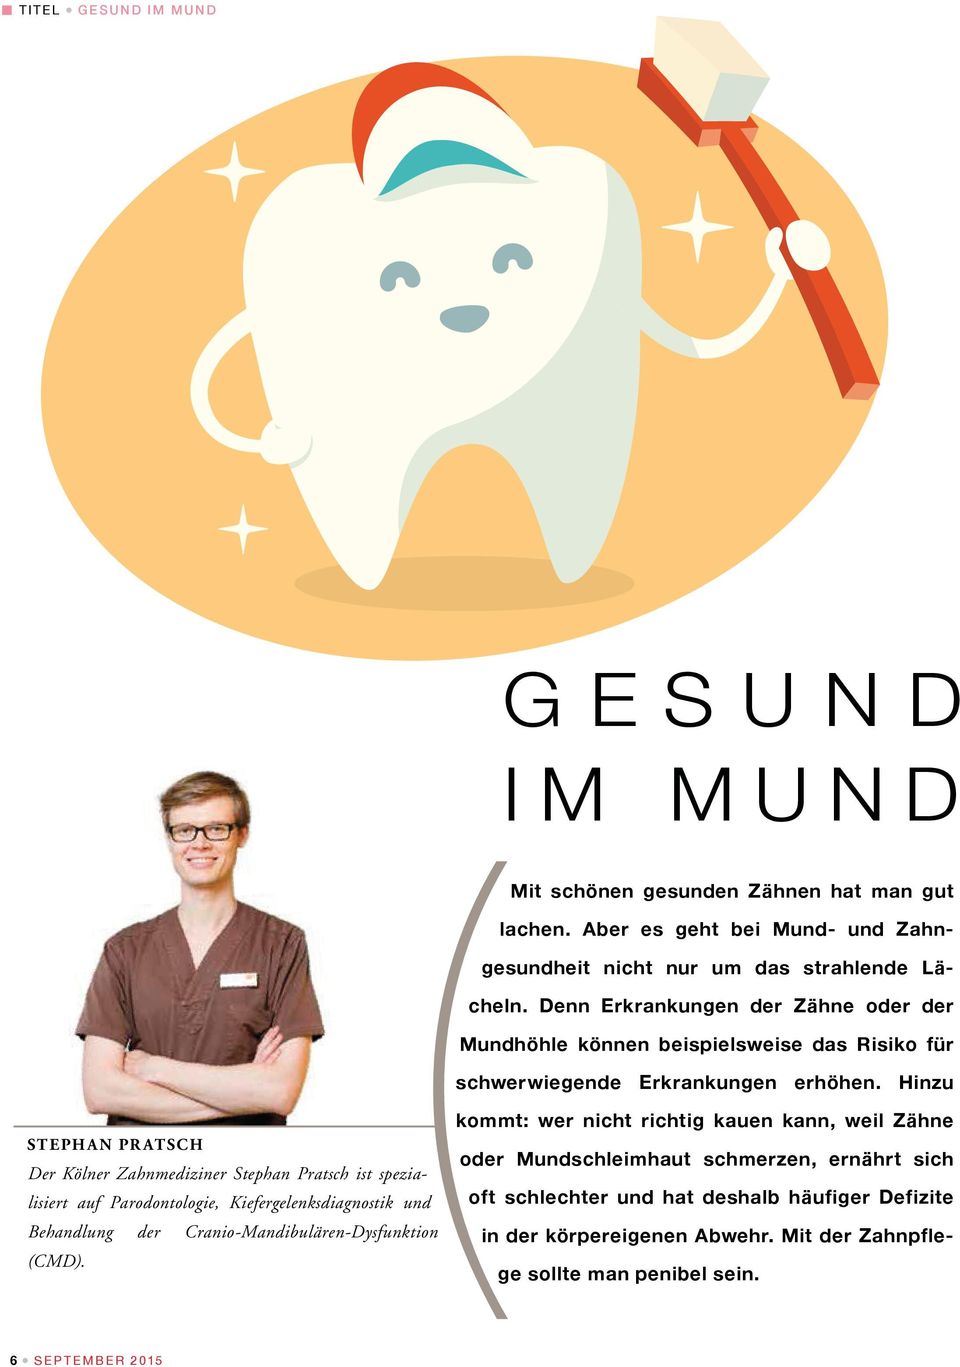 Hinzu STEPHAN PR ATSCH Der Kölner Zahnmediziner Stephan Pratsch ist spezialisiert auf Parodontologie, Kiefergelenksdiagnostik und Behandlung der Cranio-Mandibulären-Dysfunktion